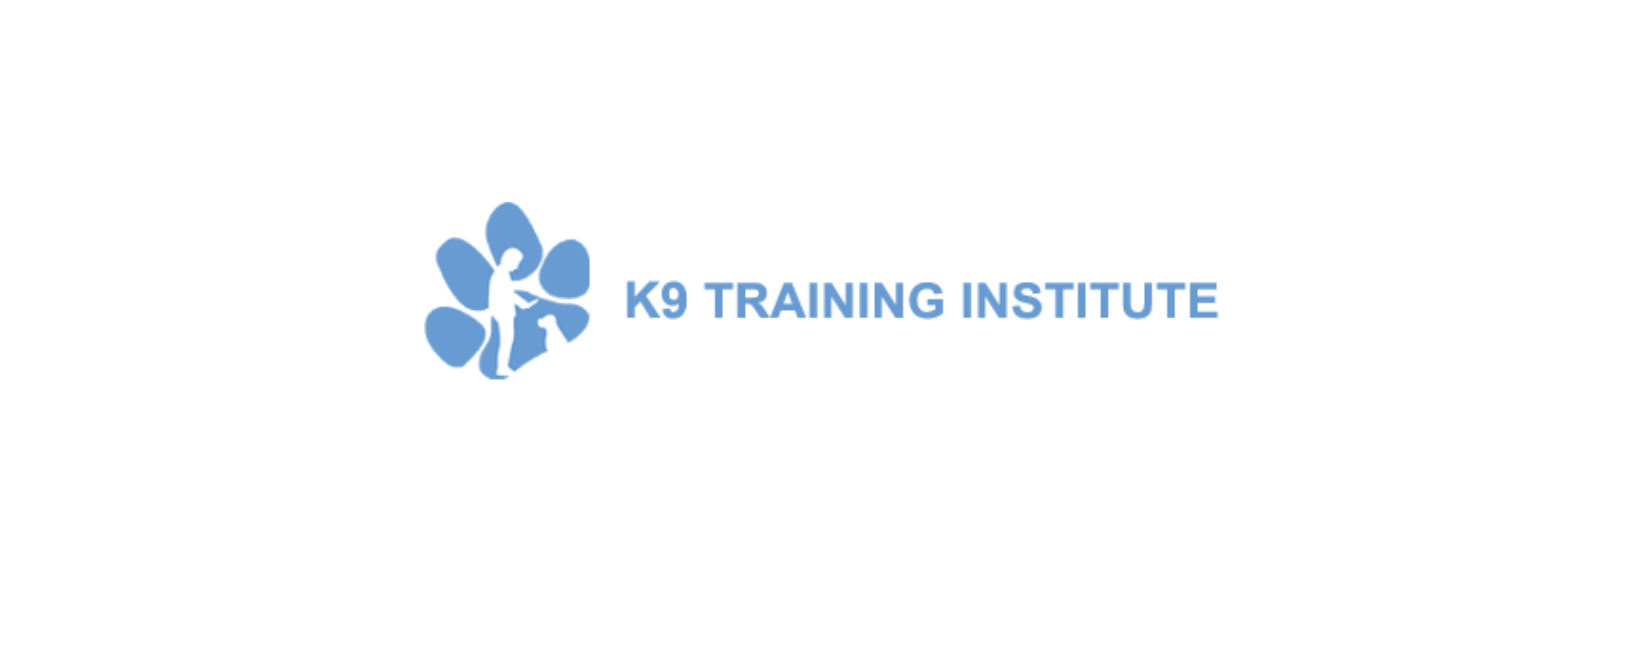 K9 Training Institute Discount Code 2022